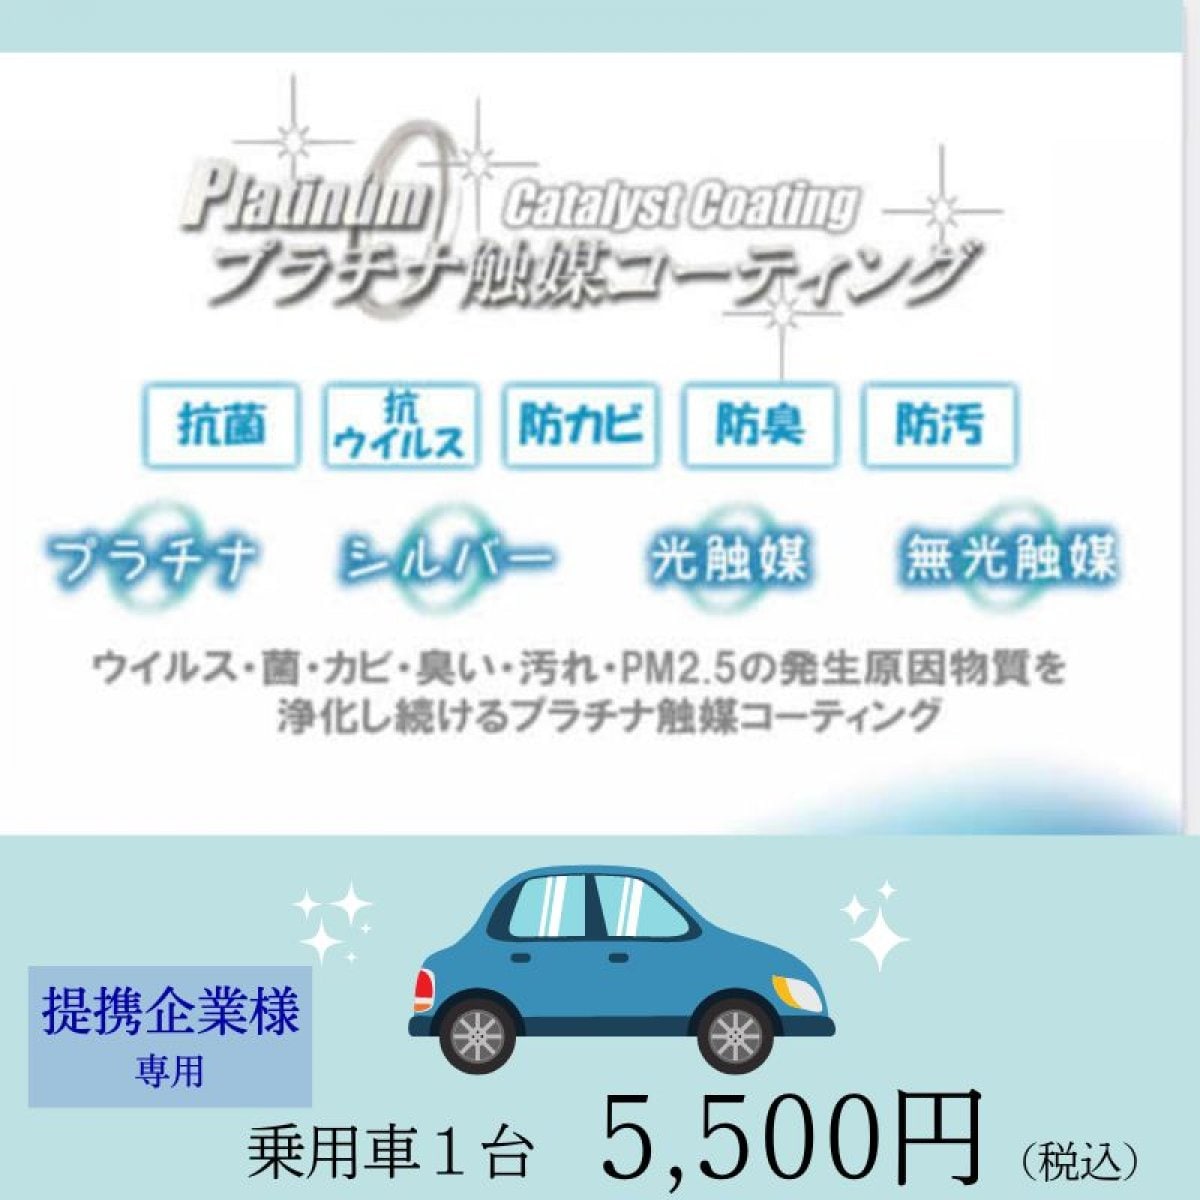 【乗用車】プラチナ触媒コーティング®︎施工チケット（提携企業様限定）